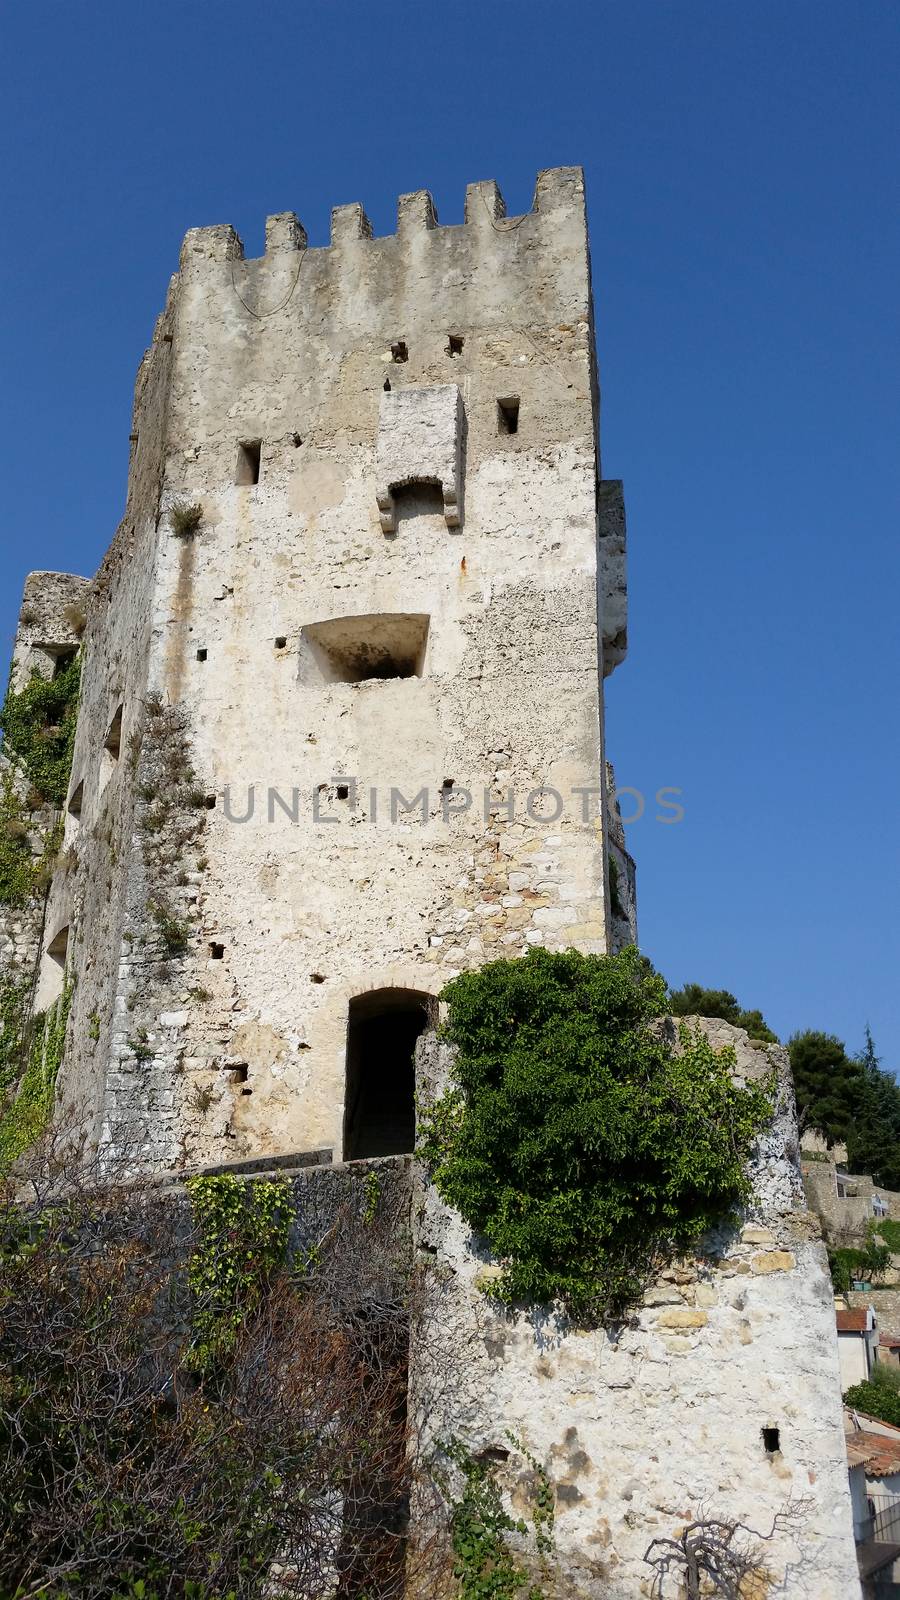 Beautiful Castle of Roquebrune-Cap-Martin in the old village of Roquebrune-Cap-Martin